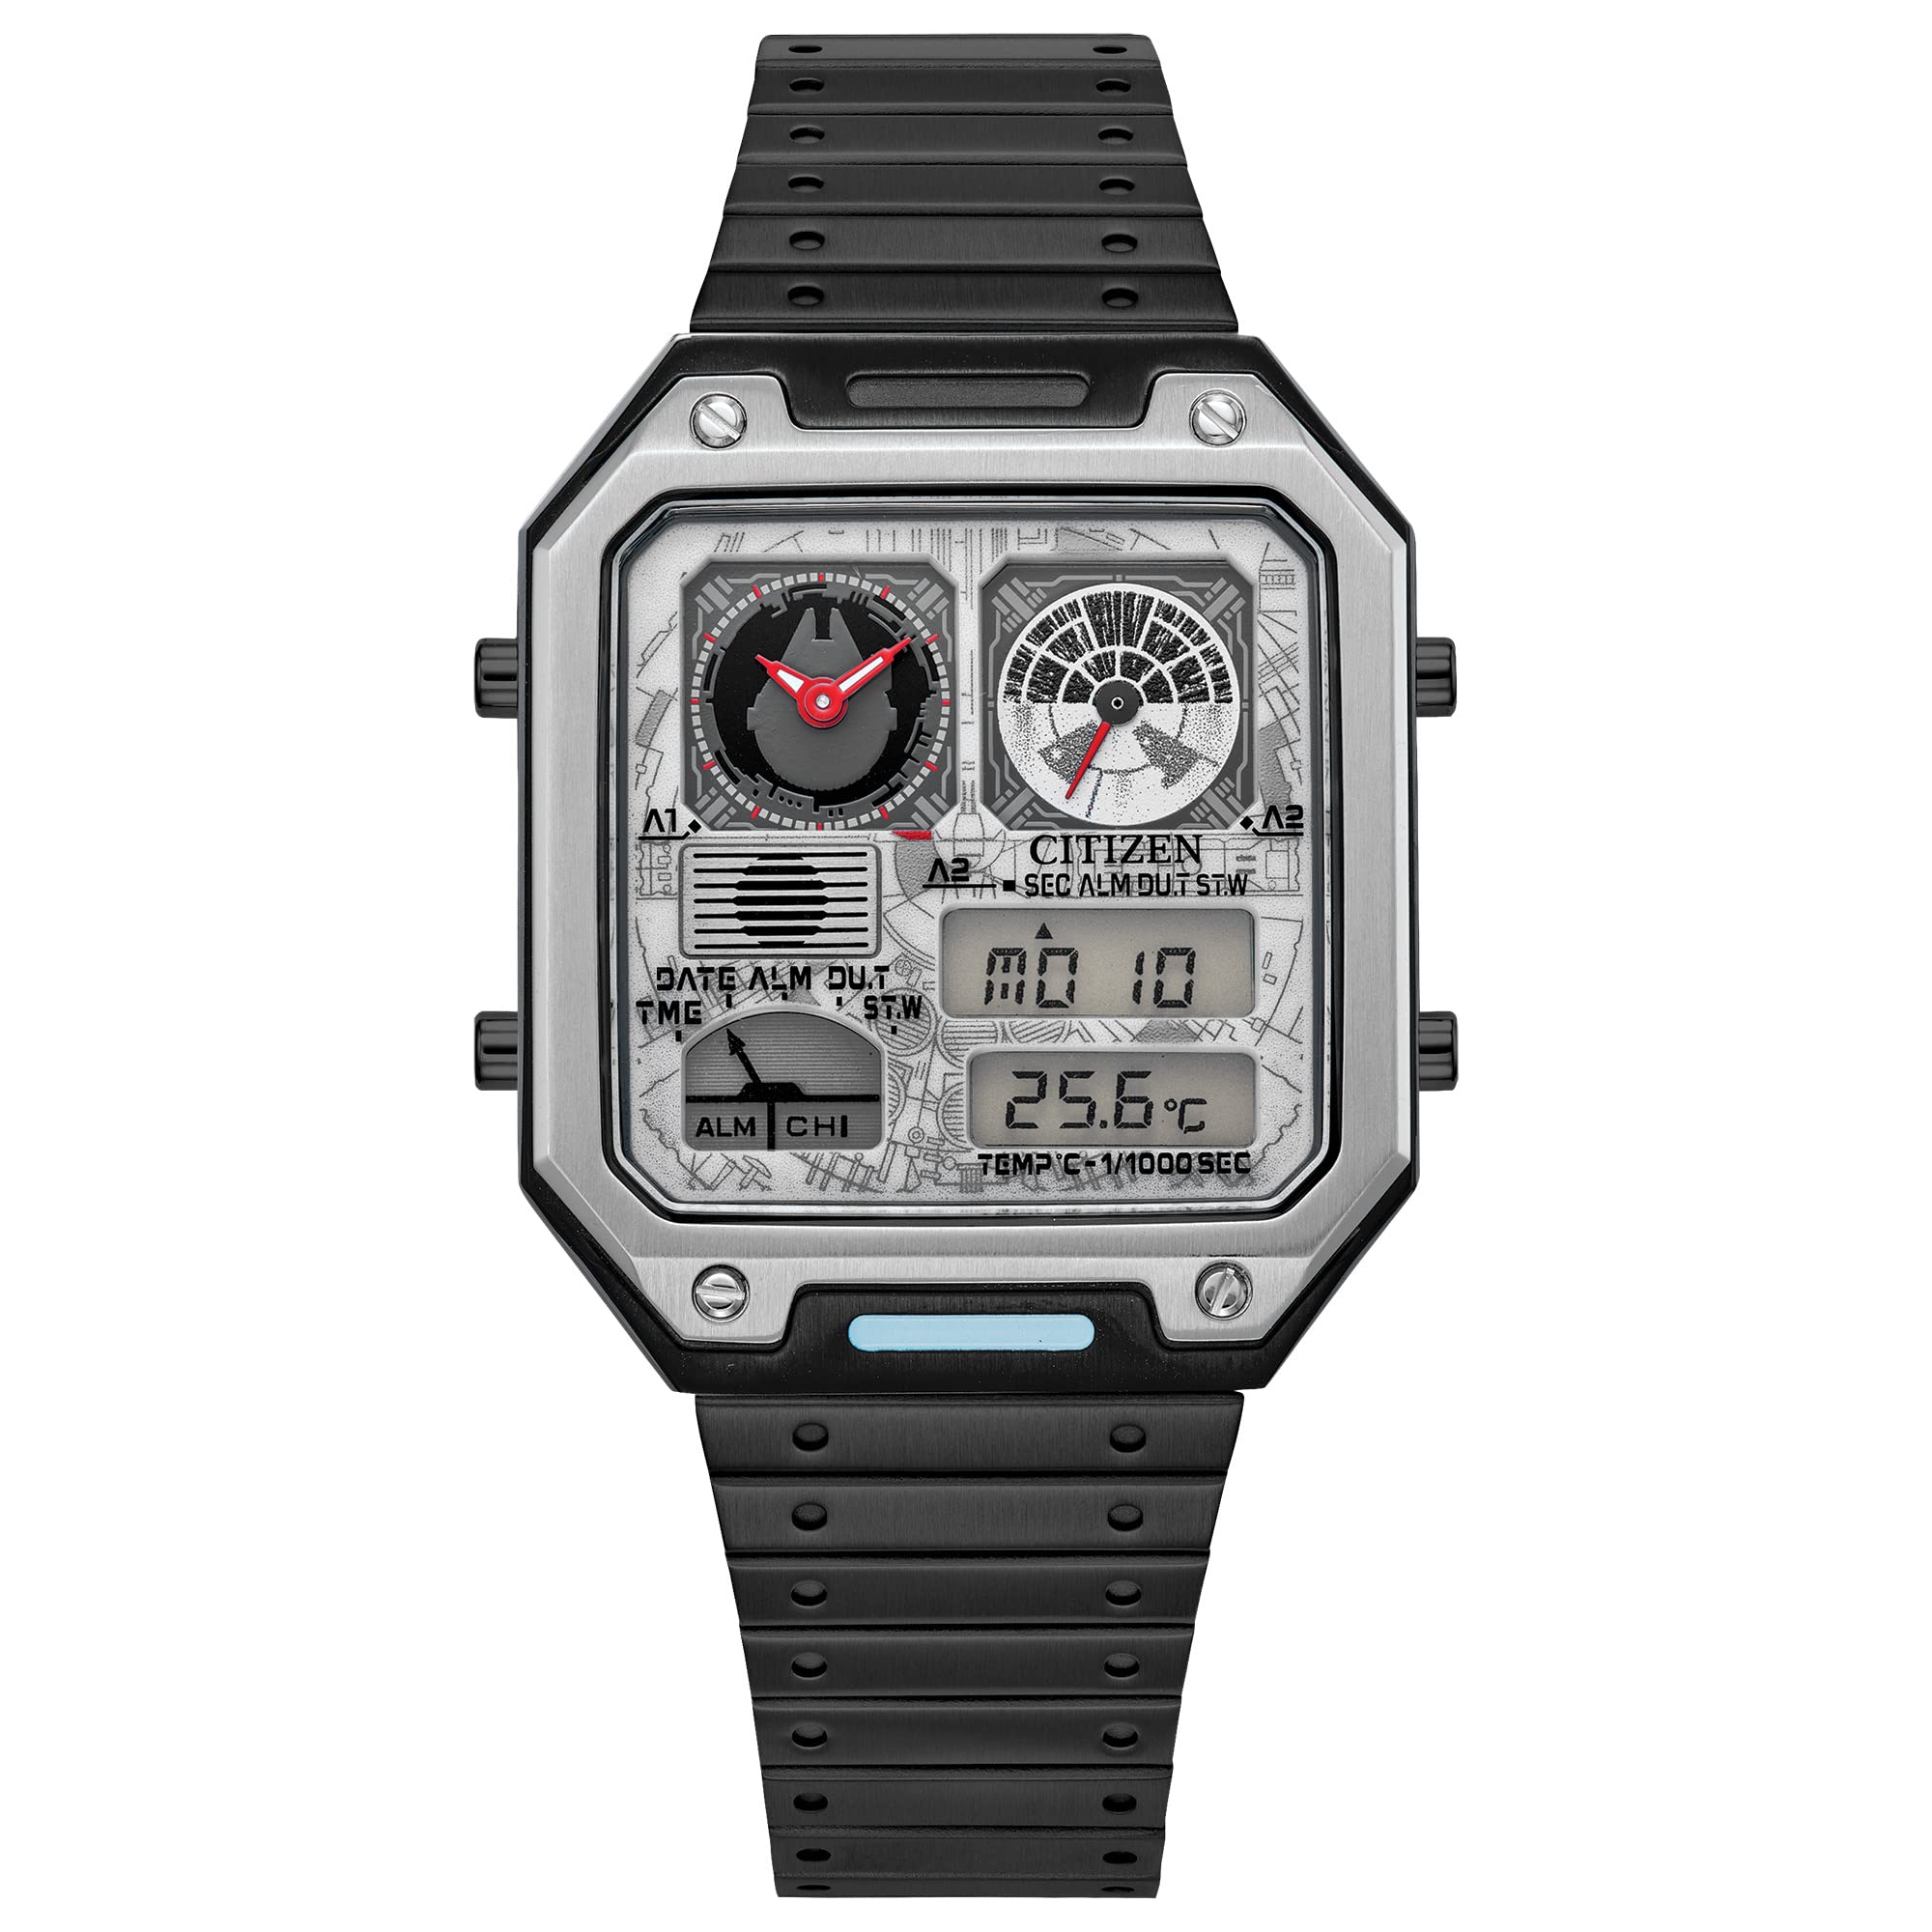 $165.63: Citizen Men's Star Wars Millennium Falcon Ana-Digi Quartz Stainless Steel Watch